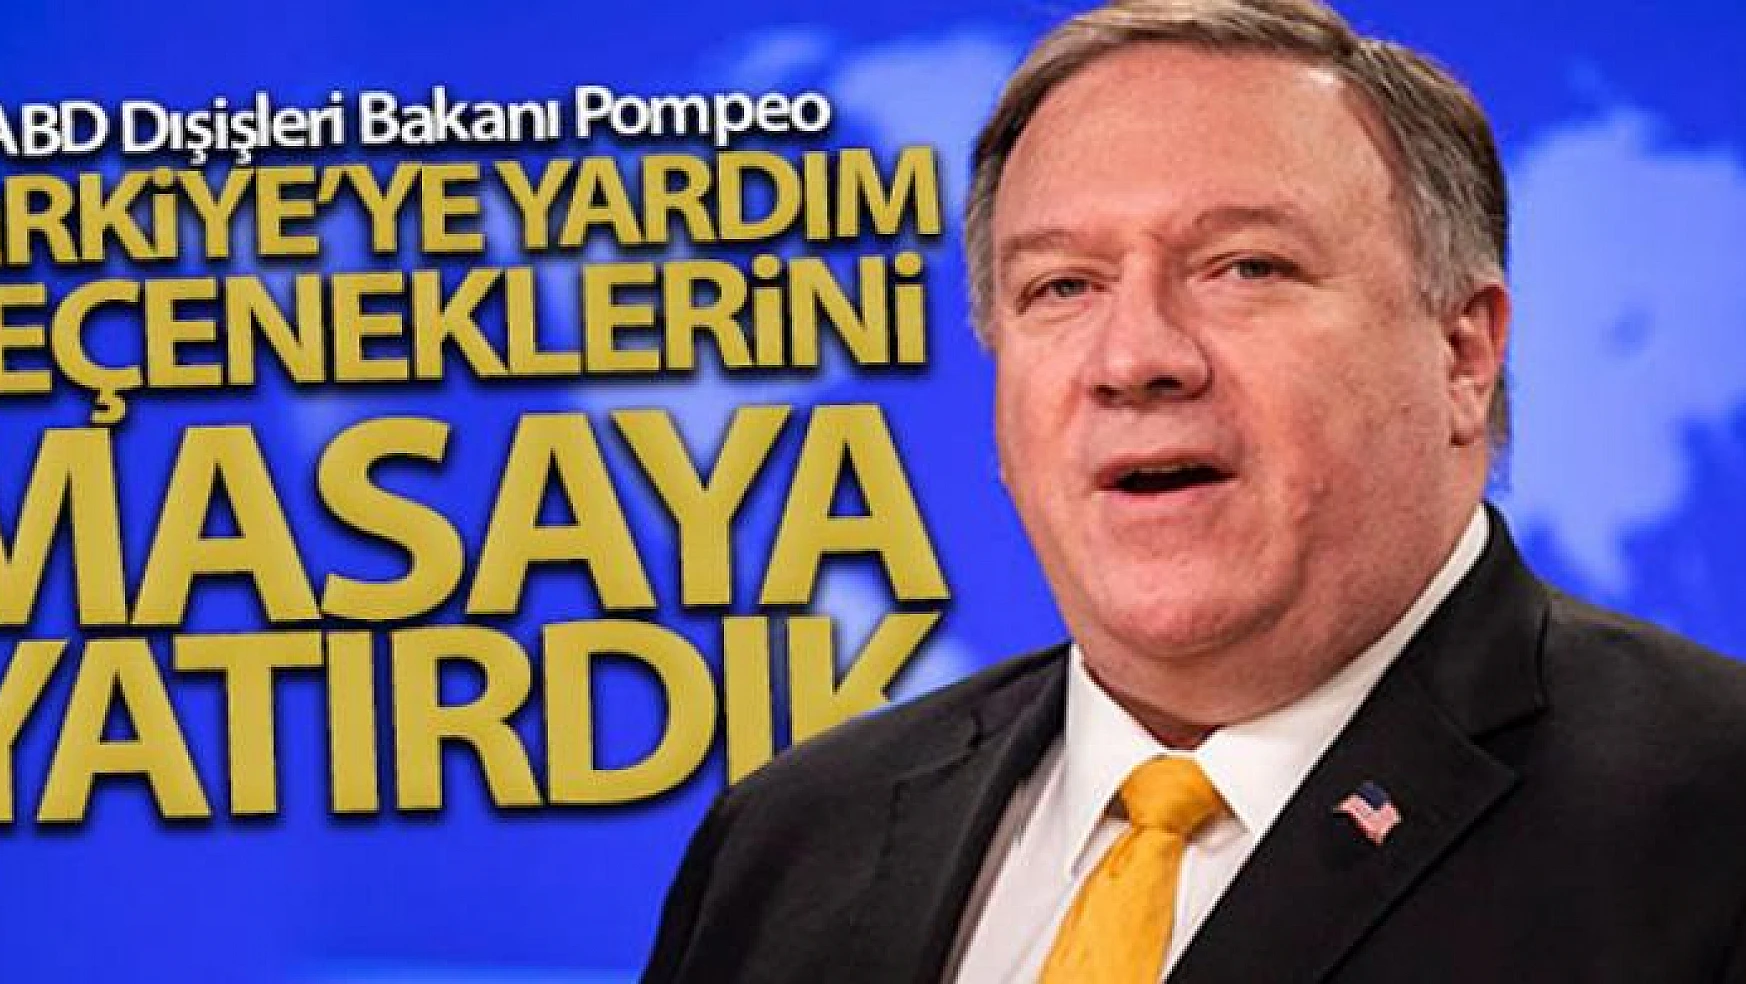 ABD Dışişleri Bakan Pompeo: 'Türkiye'ye yardım seçeneklerini masaya yatırdık'